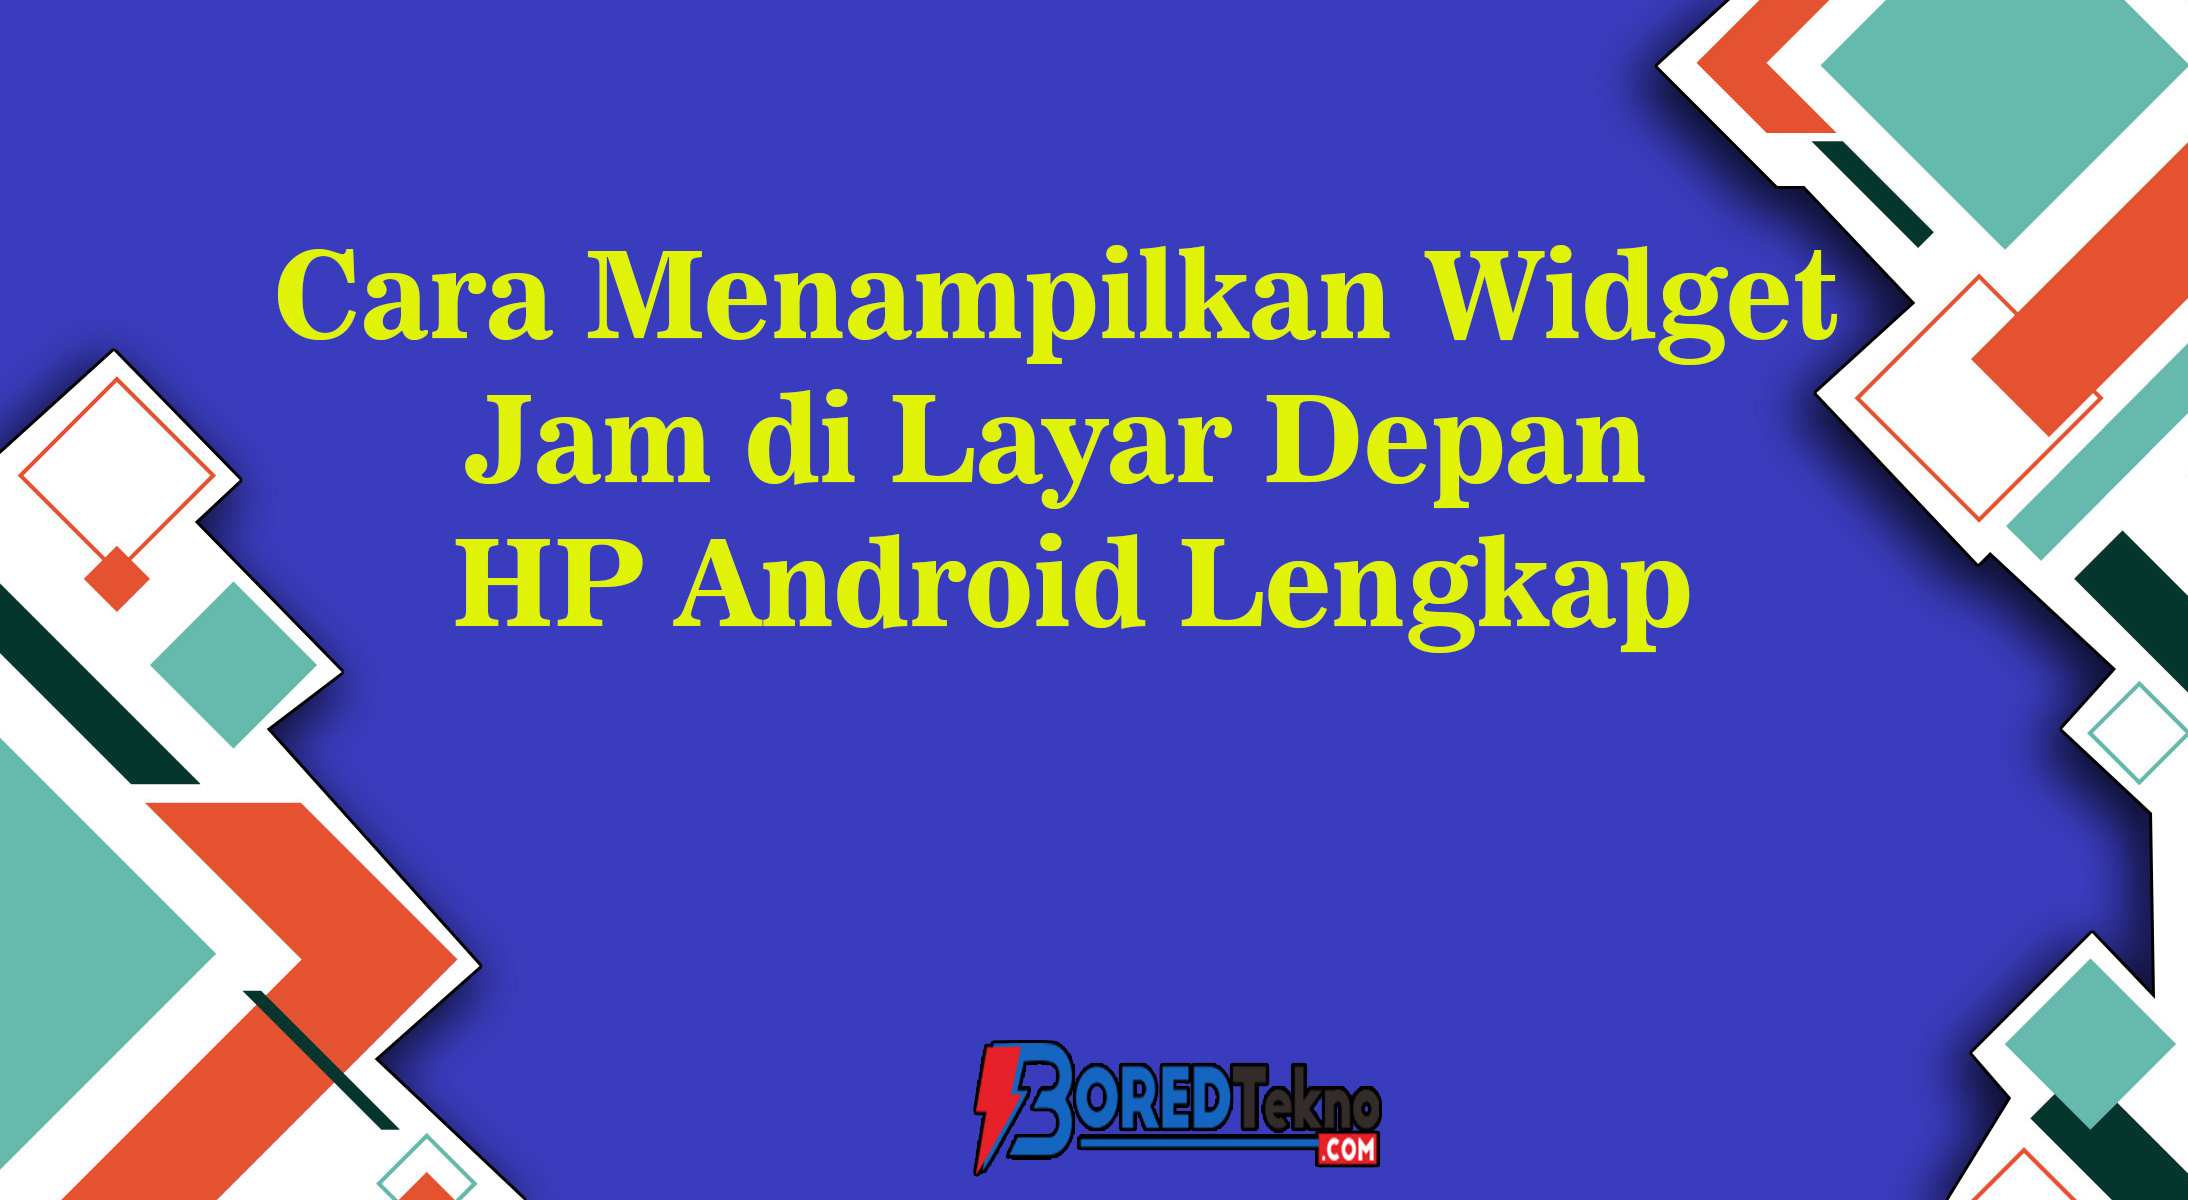 Cara Menampilkan Widget Jam di Layar Depan HP Android